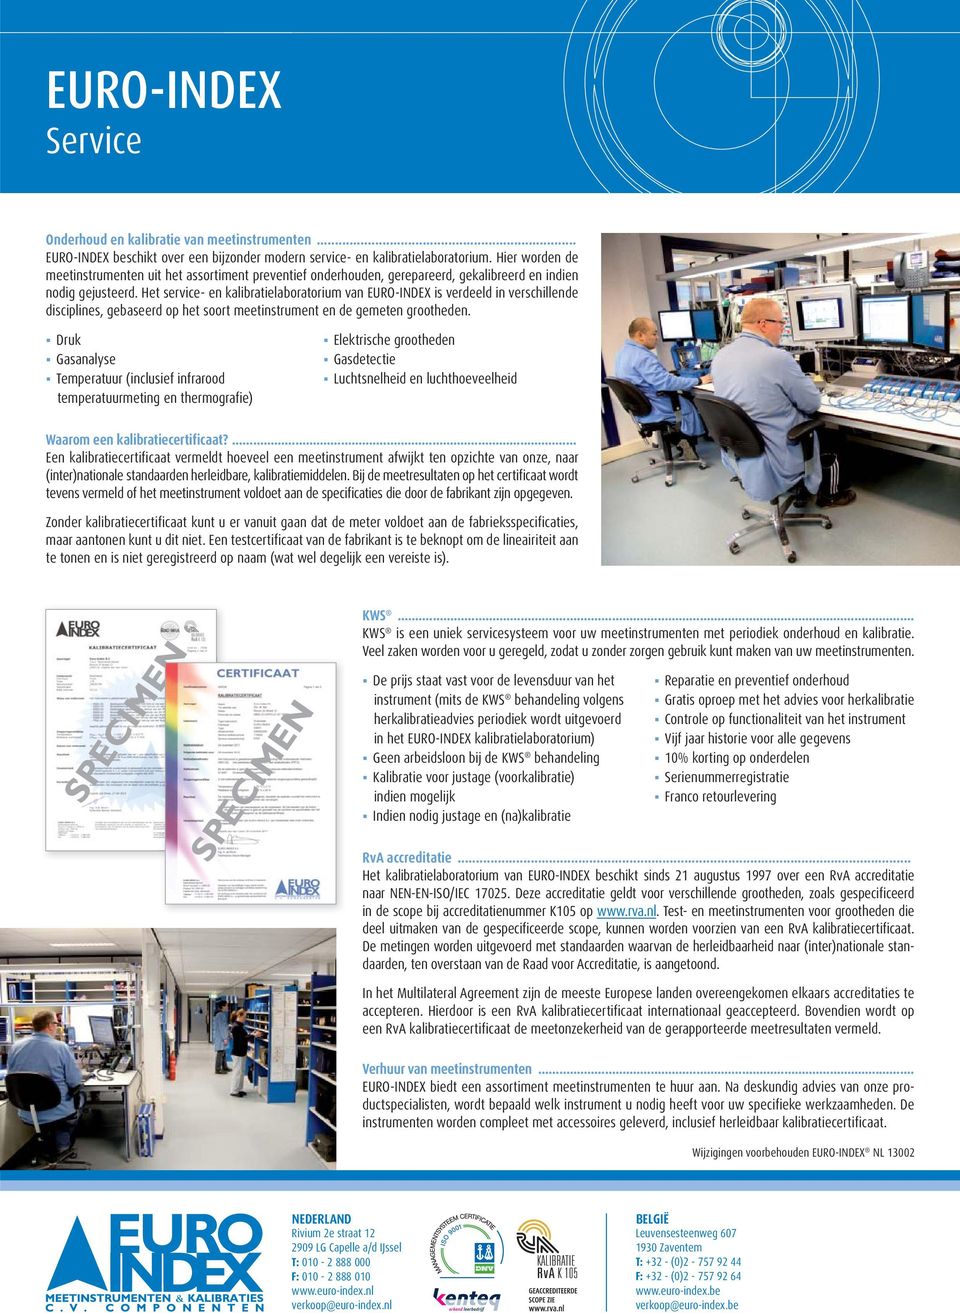 Het service en kalibratielaboratorium van EUROINDEX is verdeeld in verschillende disciplines, gebaseerd op het soort meetinstrument en de gemeten grootheden.